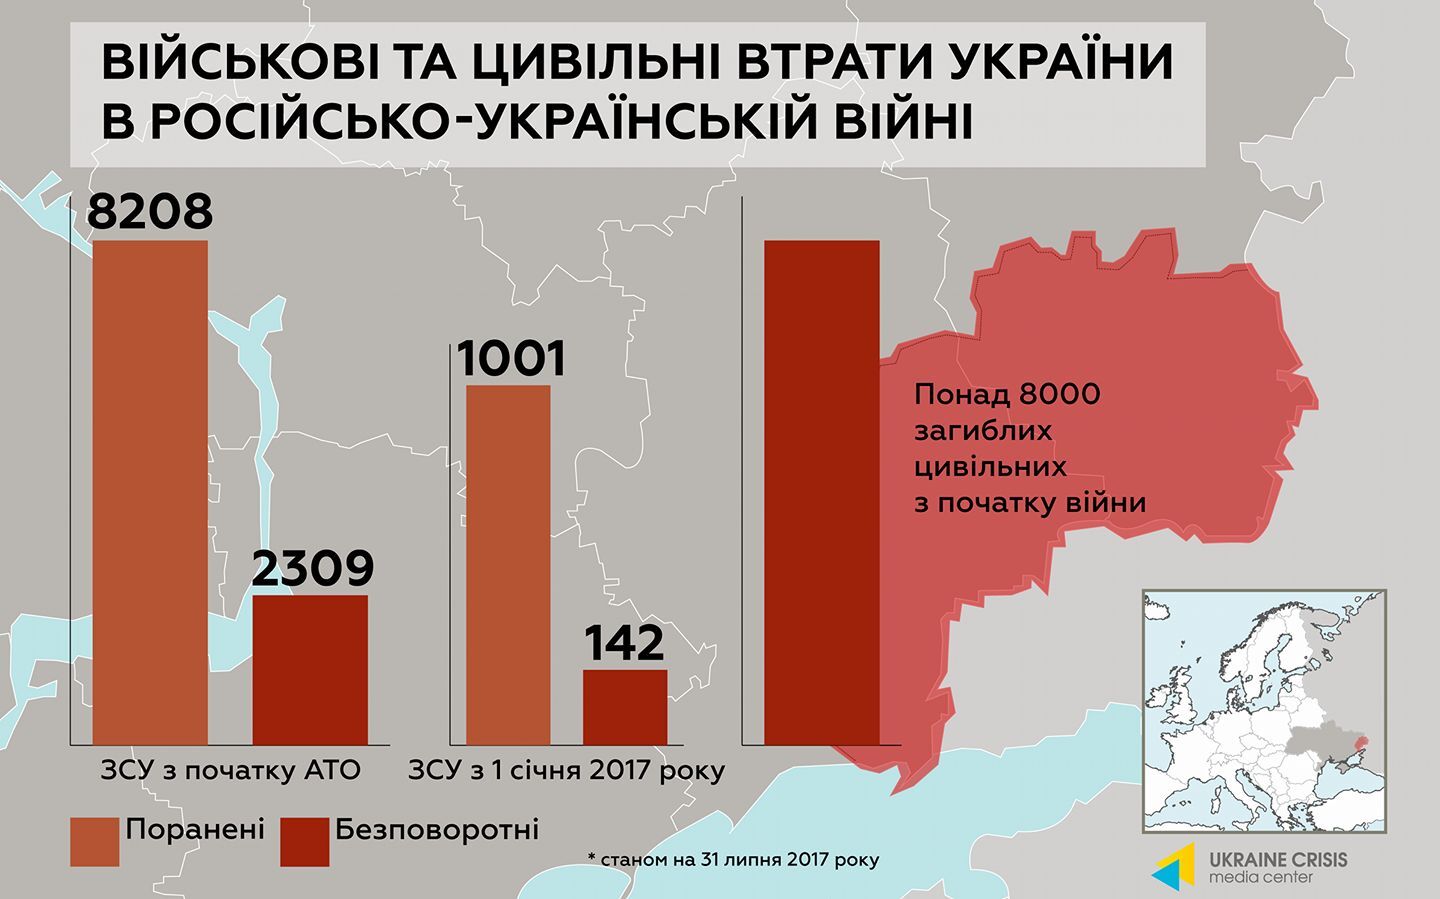 Кострома, Волгоград и другие: в сети появилась инфографика по "ихтамнетам" на Донбассе